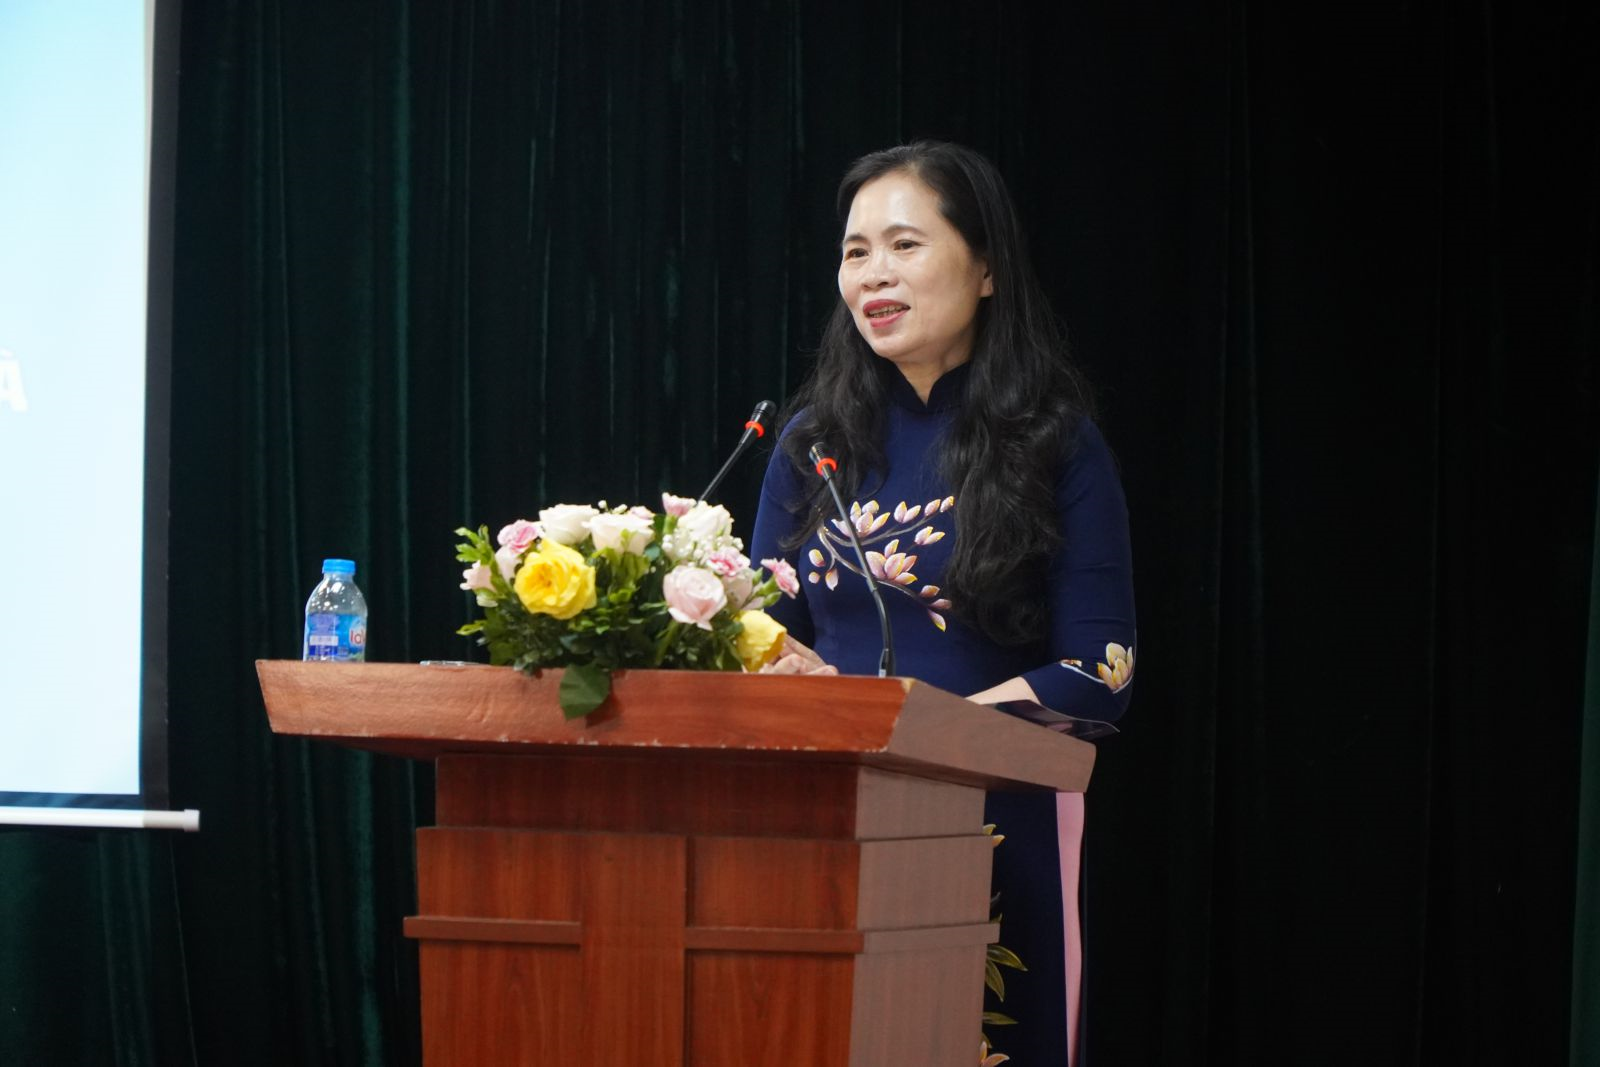 Đồng chí Nguyễn Thị Bích Hợp – Phó chủ tịch Công đoàn giáo dục Việt Nam phát biểu tại Đại hội